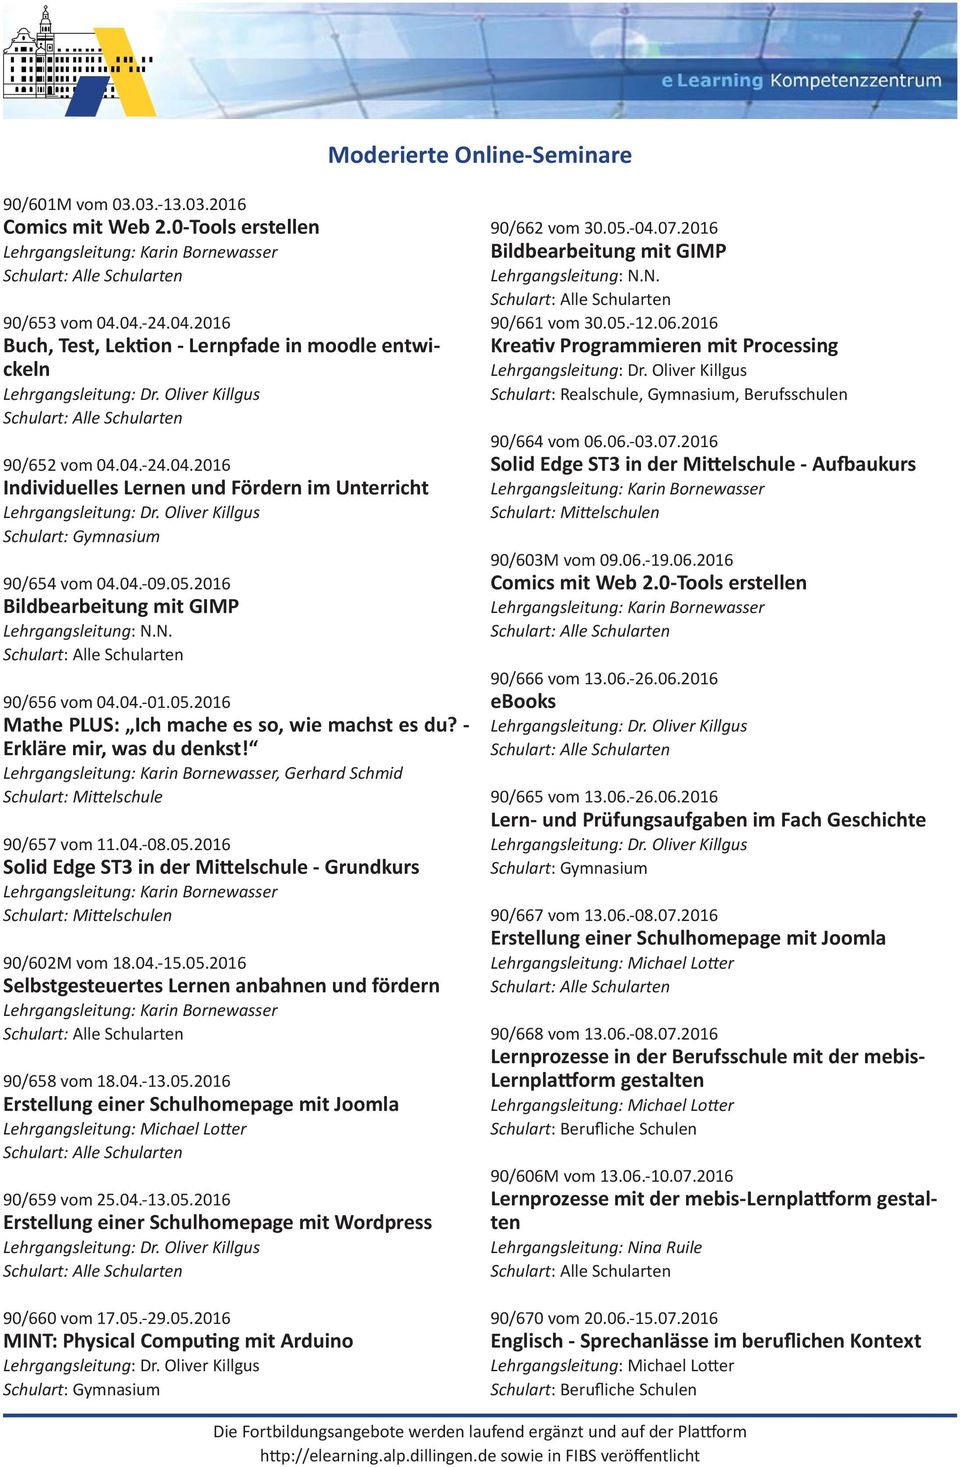 04.-08.05.2016 Solid Edge ST3 in der Mi elschule - Grundkurs 90/602M vom 18.04.-15.05.2016 Selbstgesteuertes Lernen anbahnen und fördern 90/658 vom 18.04.-13.05.2016 Erstellung einer Schulhomepage mit Joomla 90/659 vom 25.